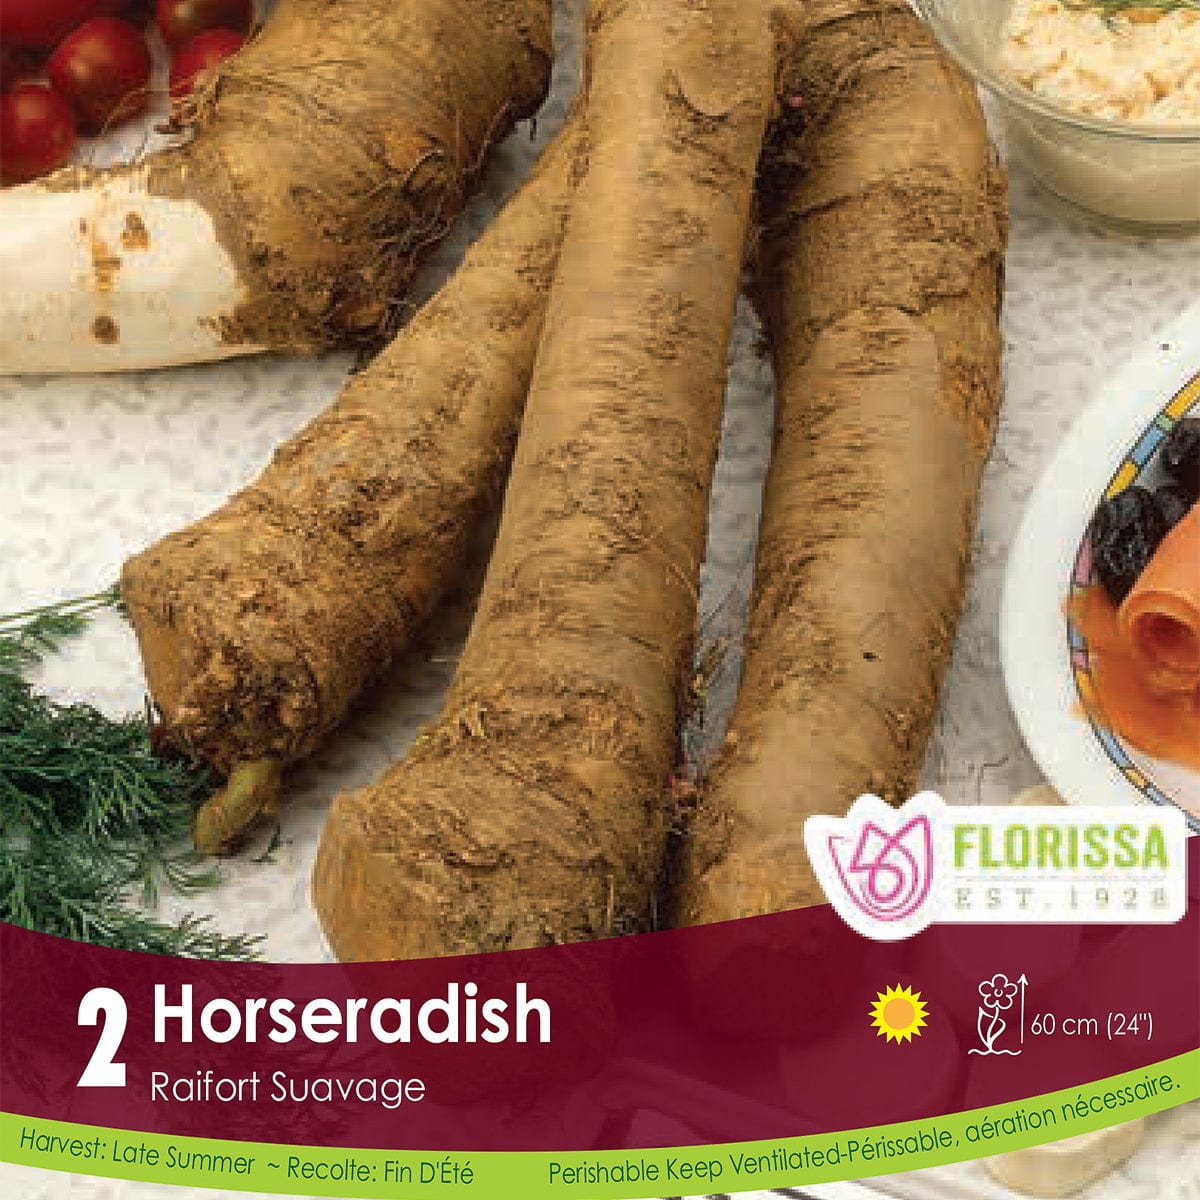 Horseradish starter garden